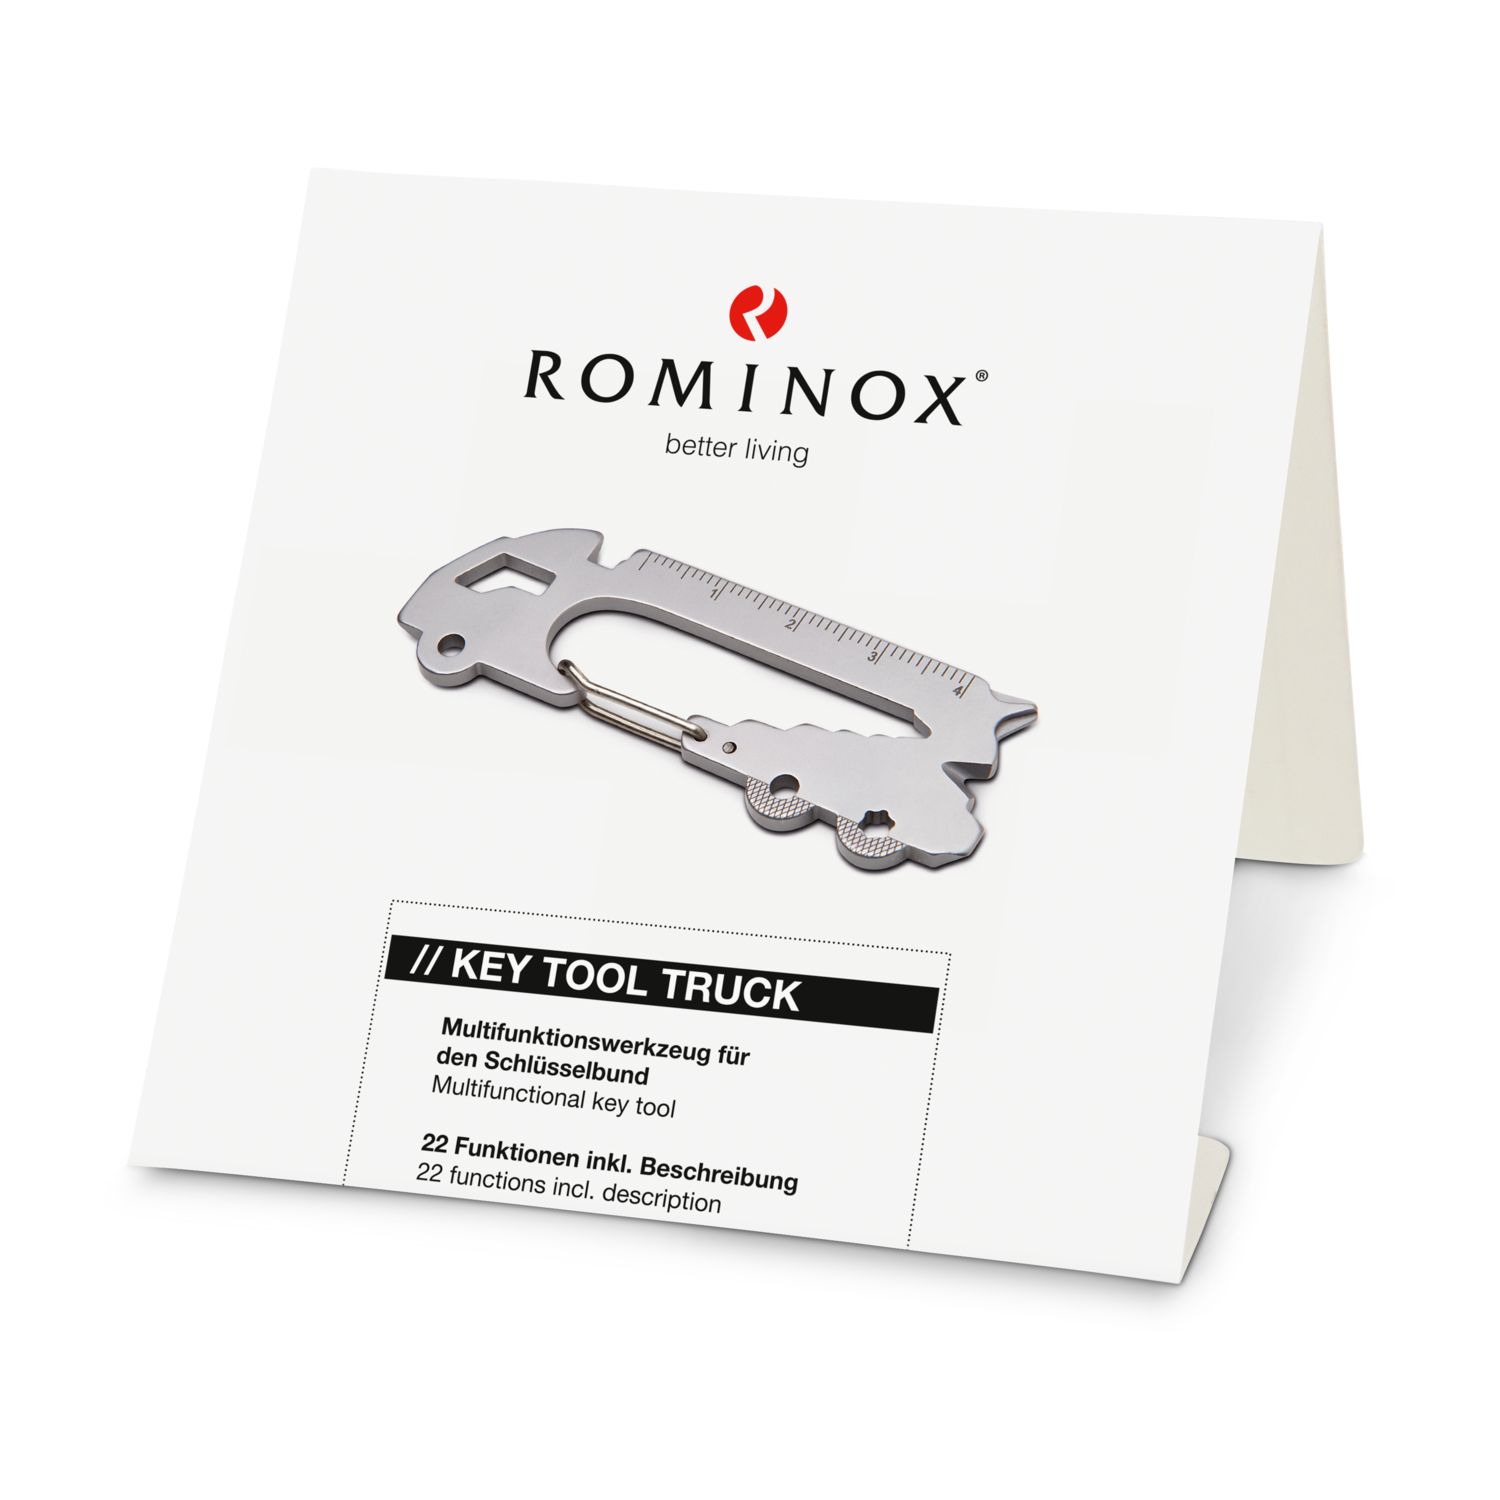 ROMINOX® Key Tool Truck (22 Funktionen) Danke 2K2103a